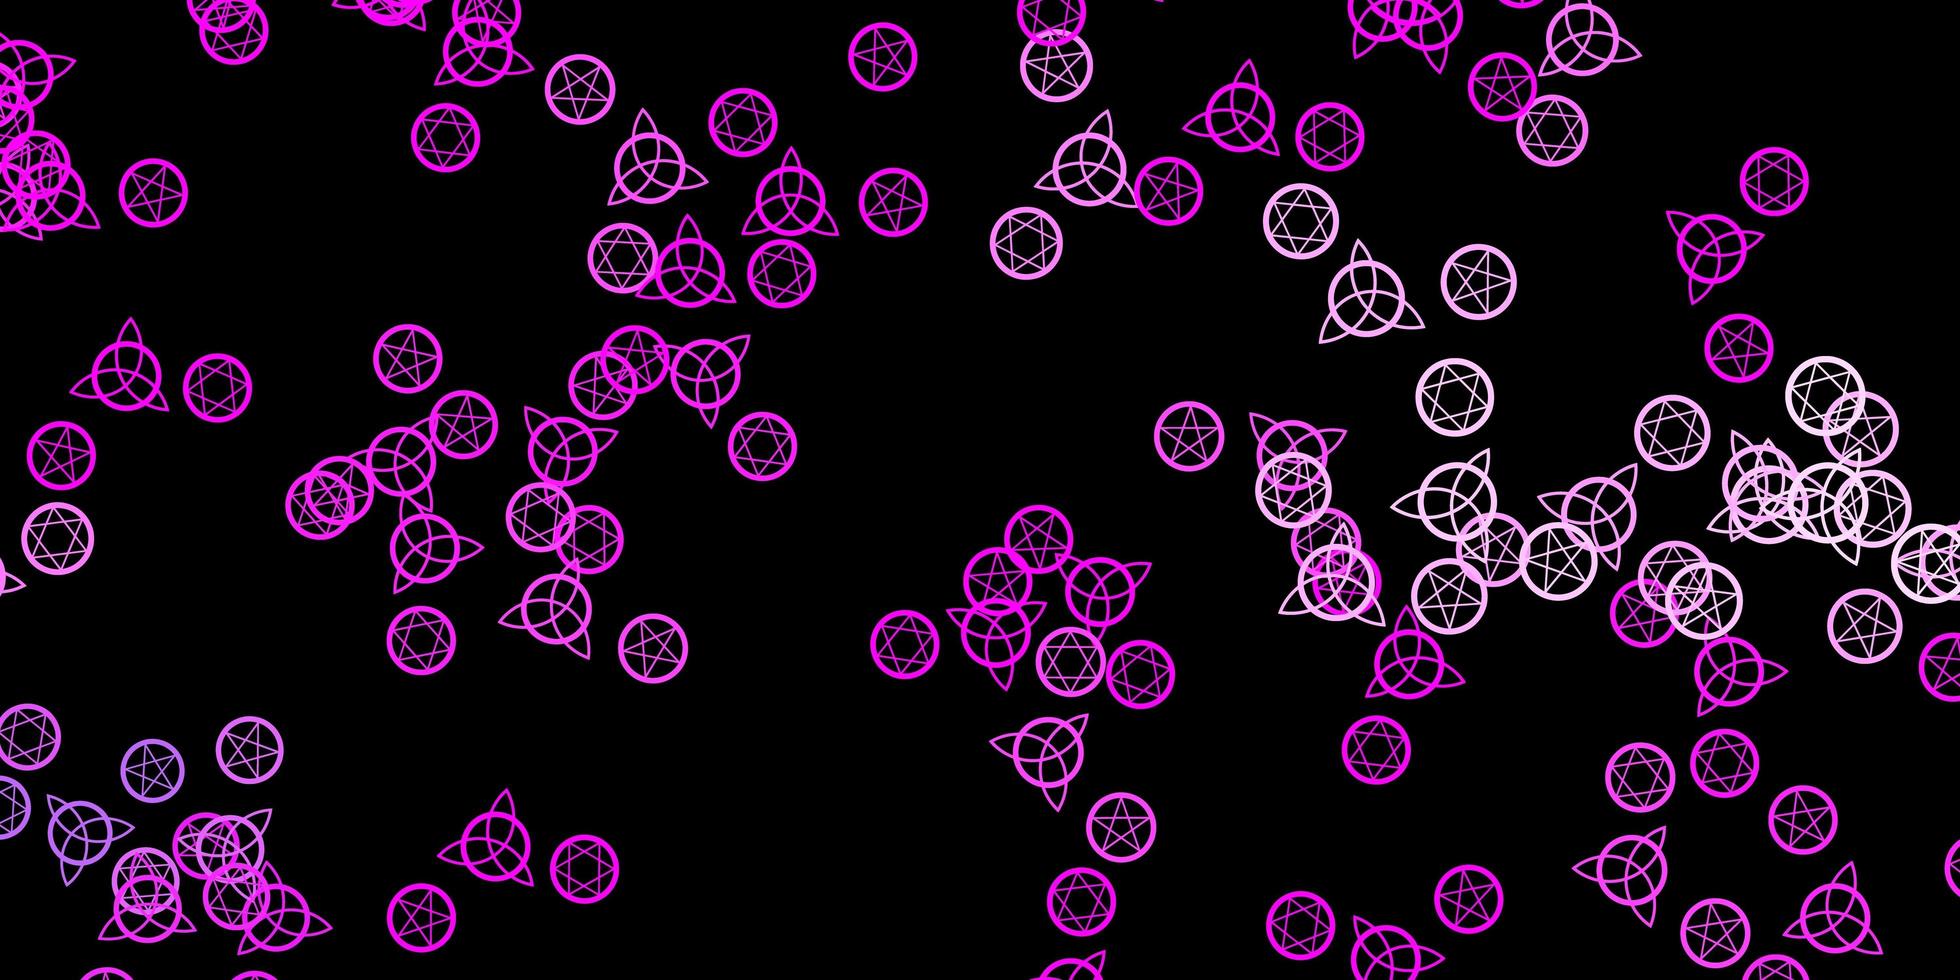 patrón de vector rosa púrpura oscuro con elementos mágicos